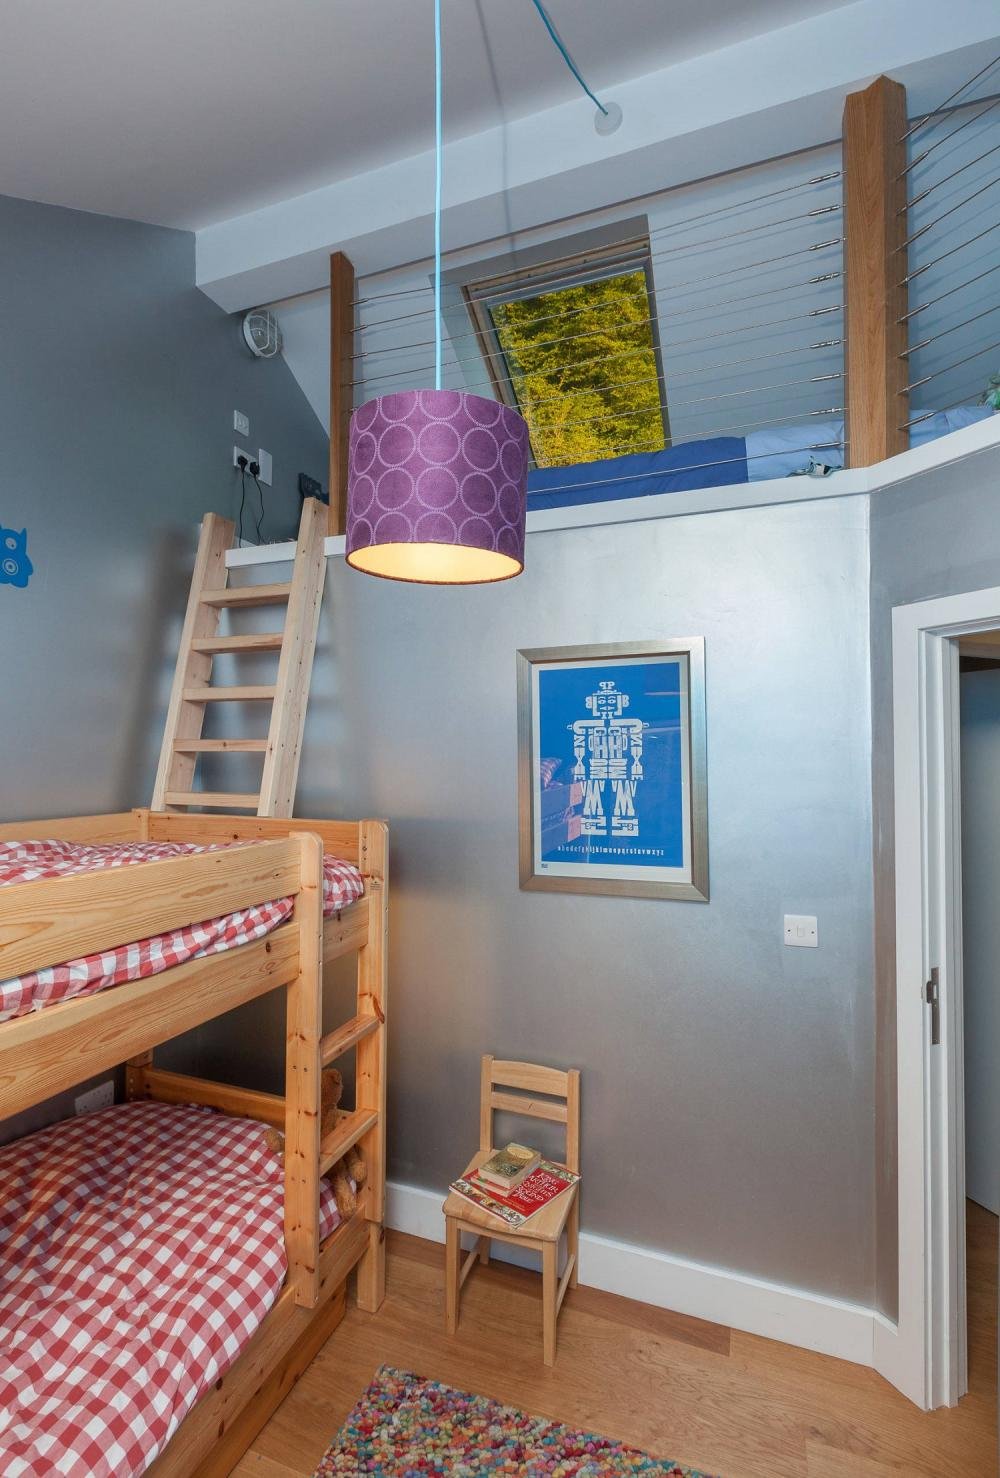 20181225085225 dbba Những mẫu giường được thiết kế dành riêng cho phòng ngủ nhỏ hẹp